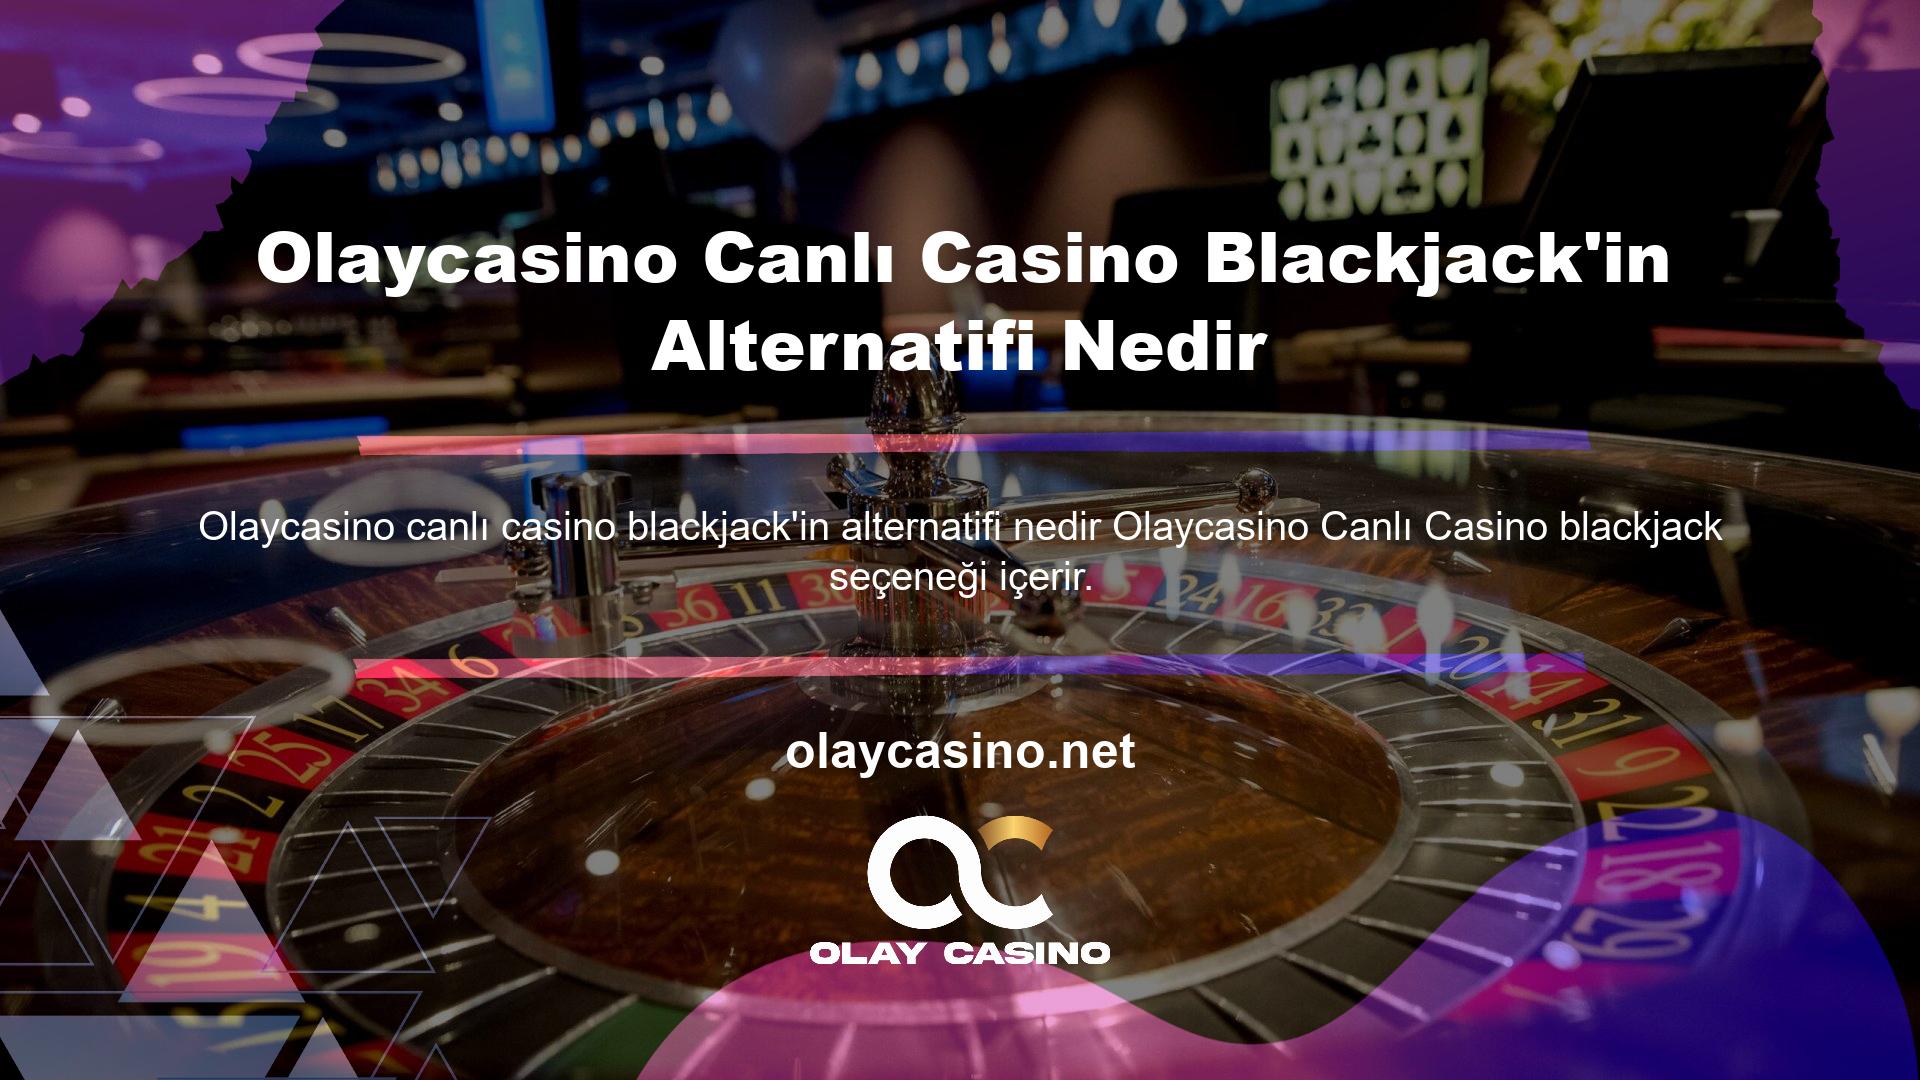 Tüm oyun sağlayıcılar, blackjack oyunlarını sitelerine entegre eder